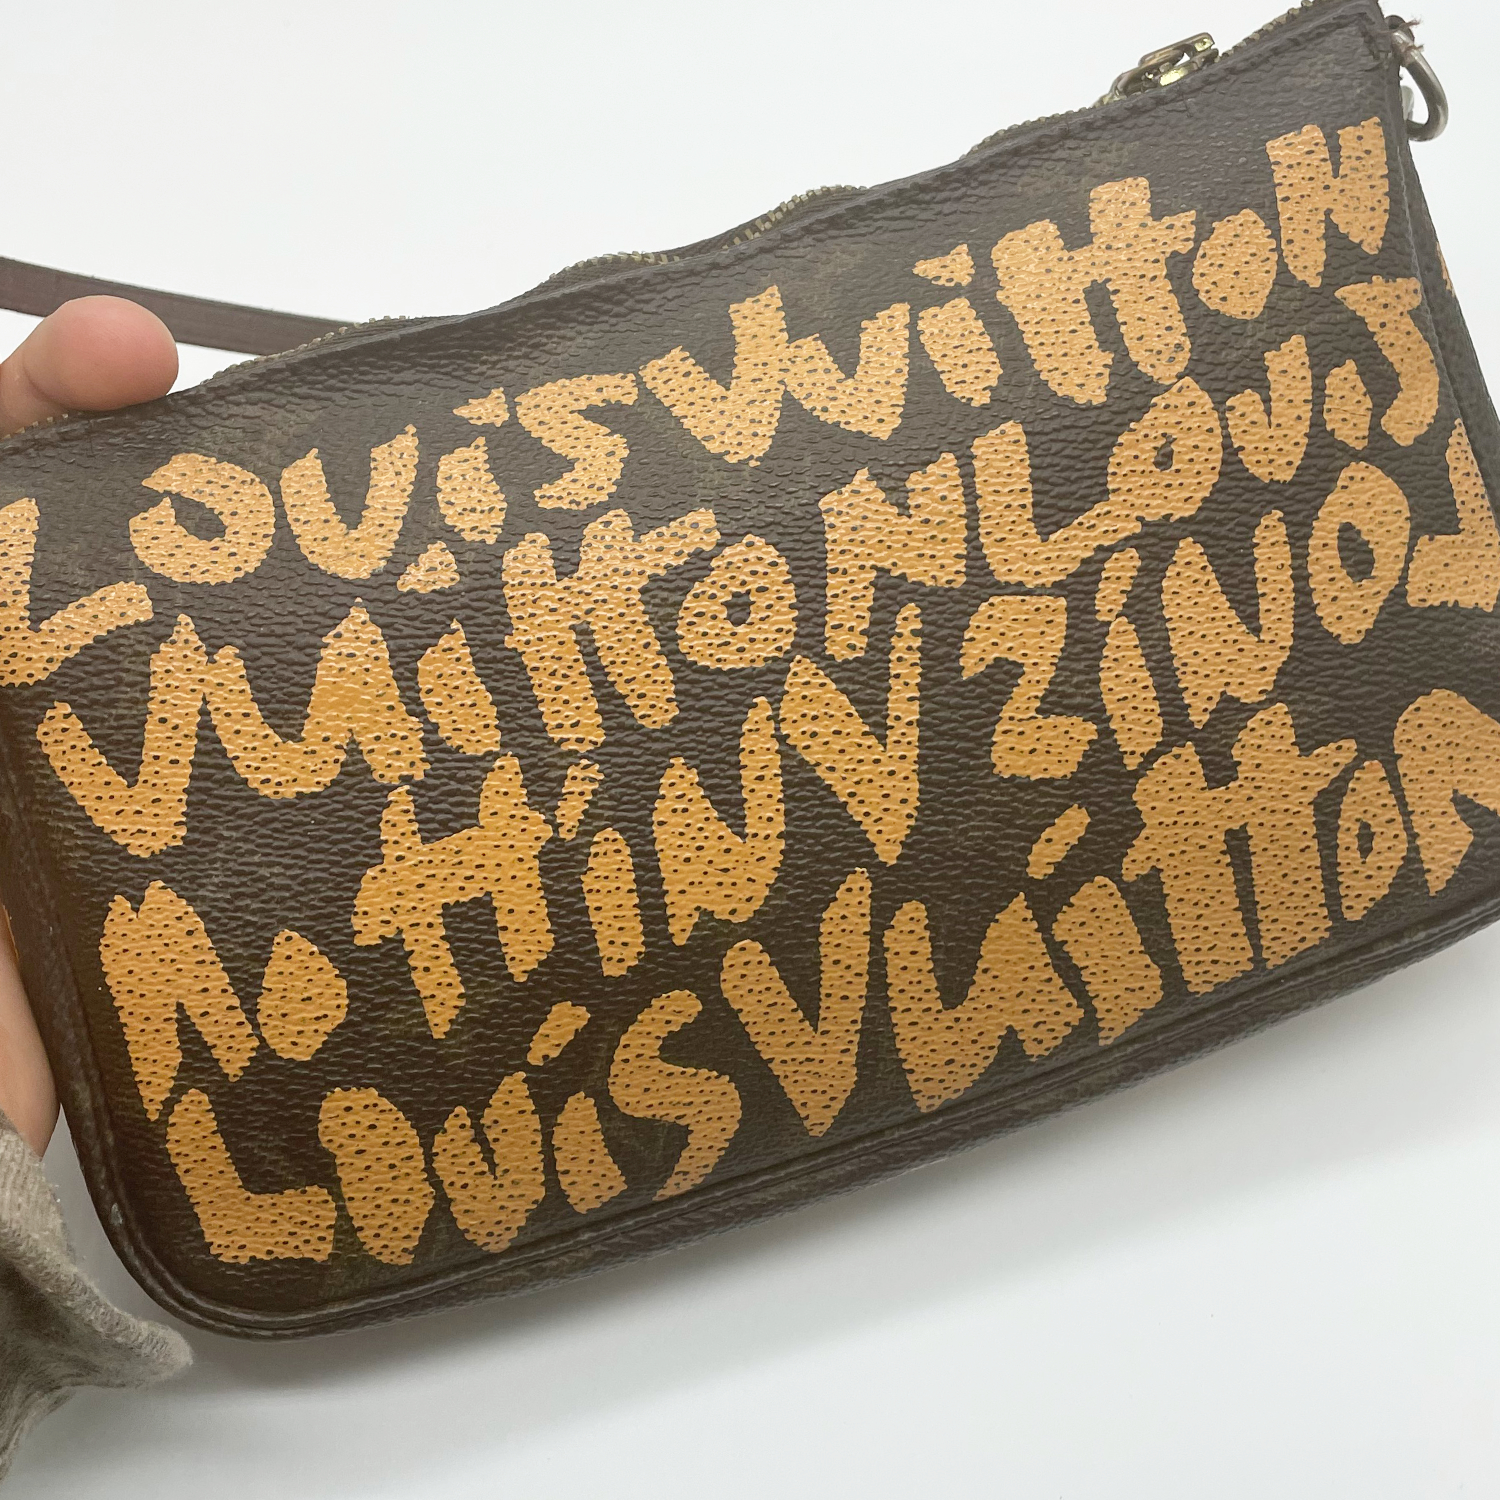 Louis Vuitton Bag - Authentic Louis Vuitton Stephen Sprouse Graffiti Pochette Mini Shoulder Bag in Khaki Green 90s y2k